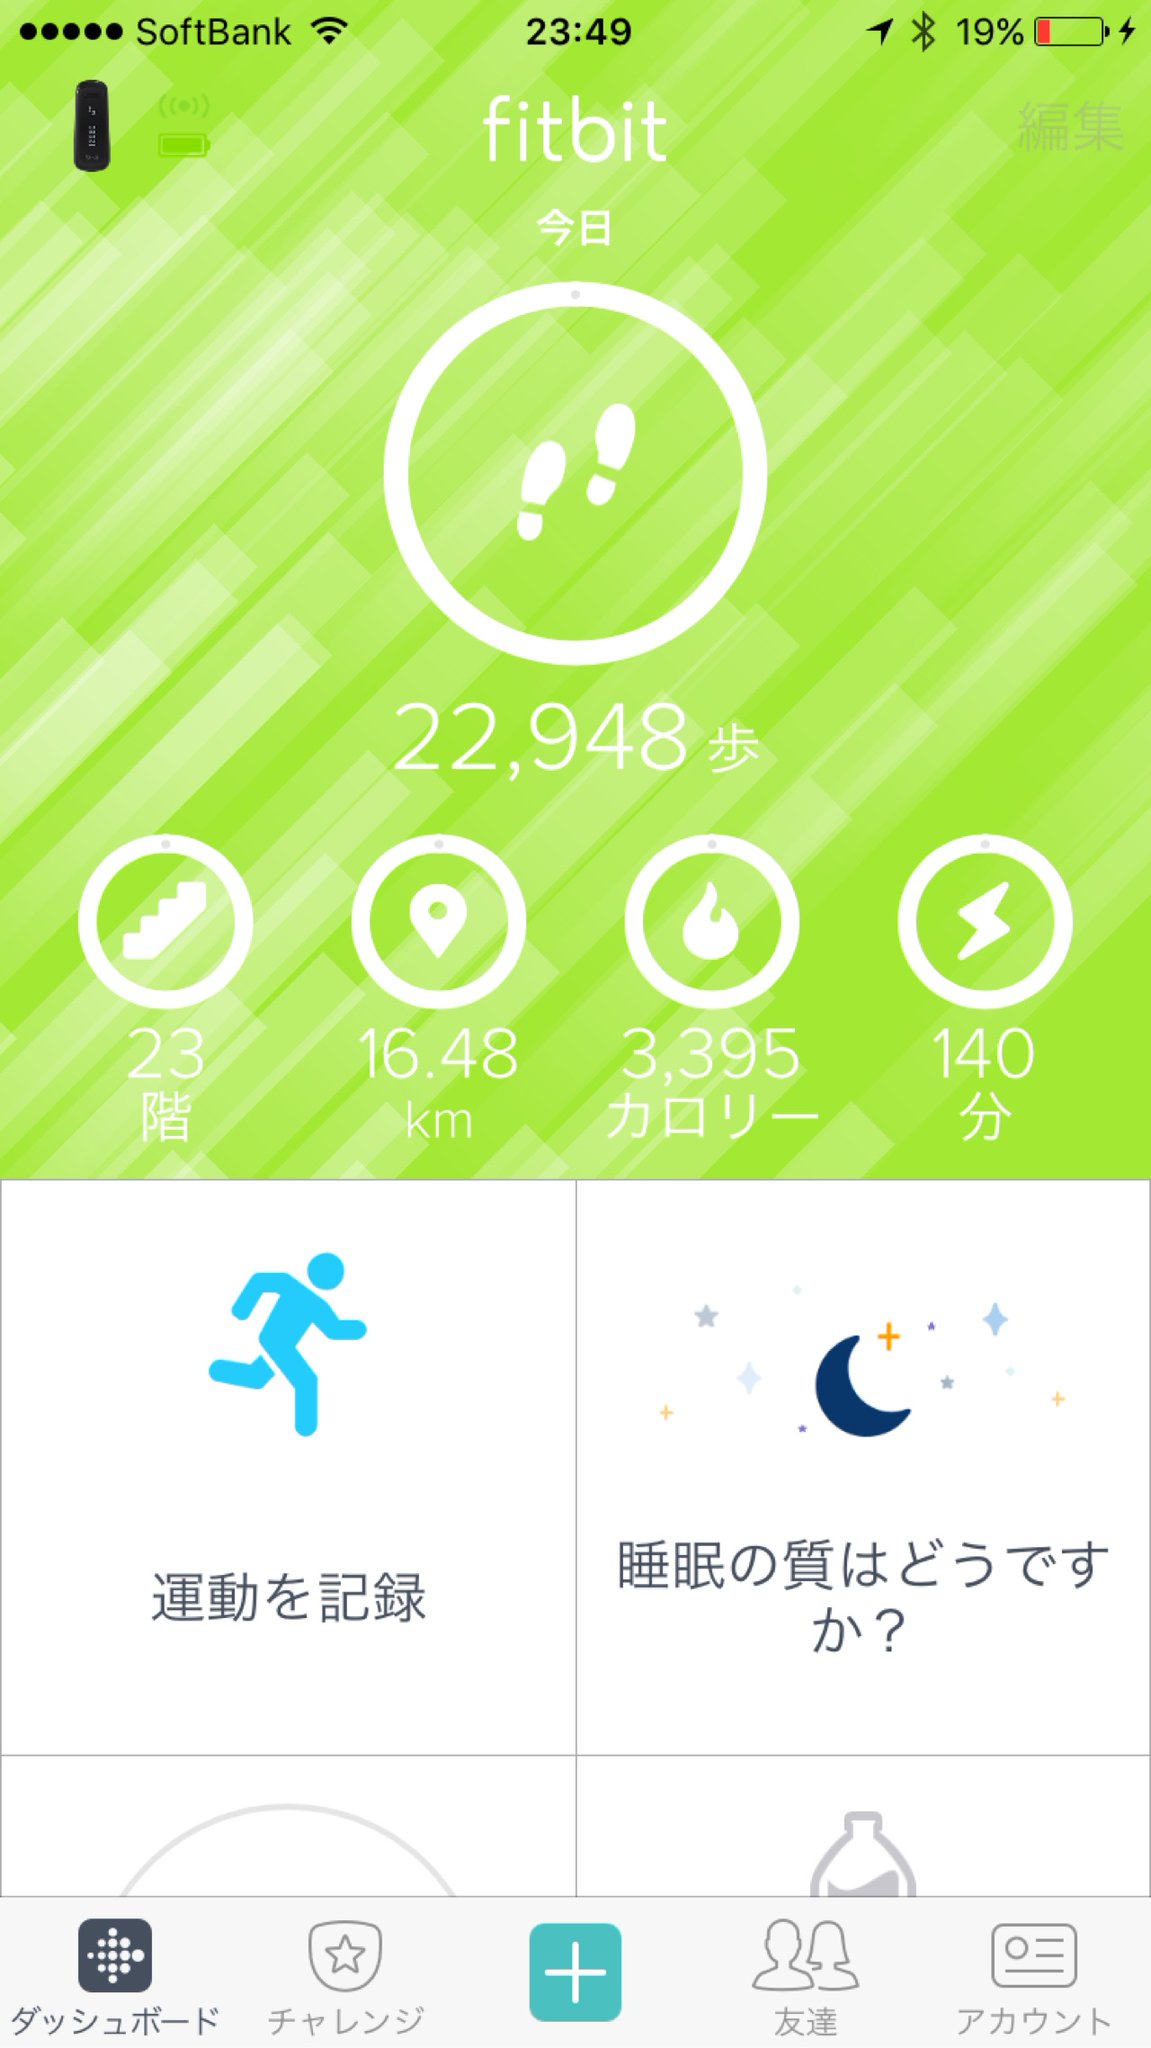 今日はほんとによく歩いた。2万歩を超えたからなのか、 Fitbit アプリがちょっと派手な表示になった。 